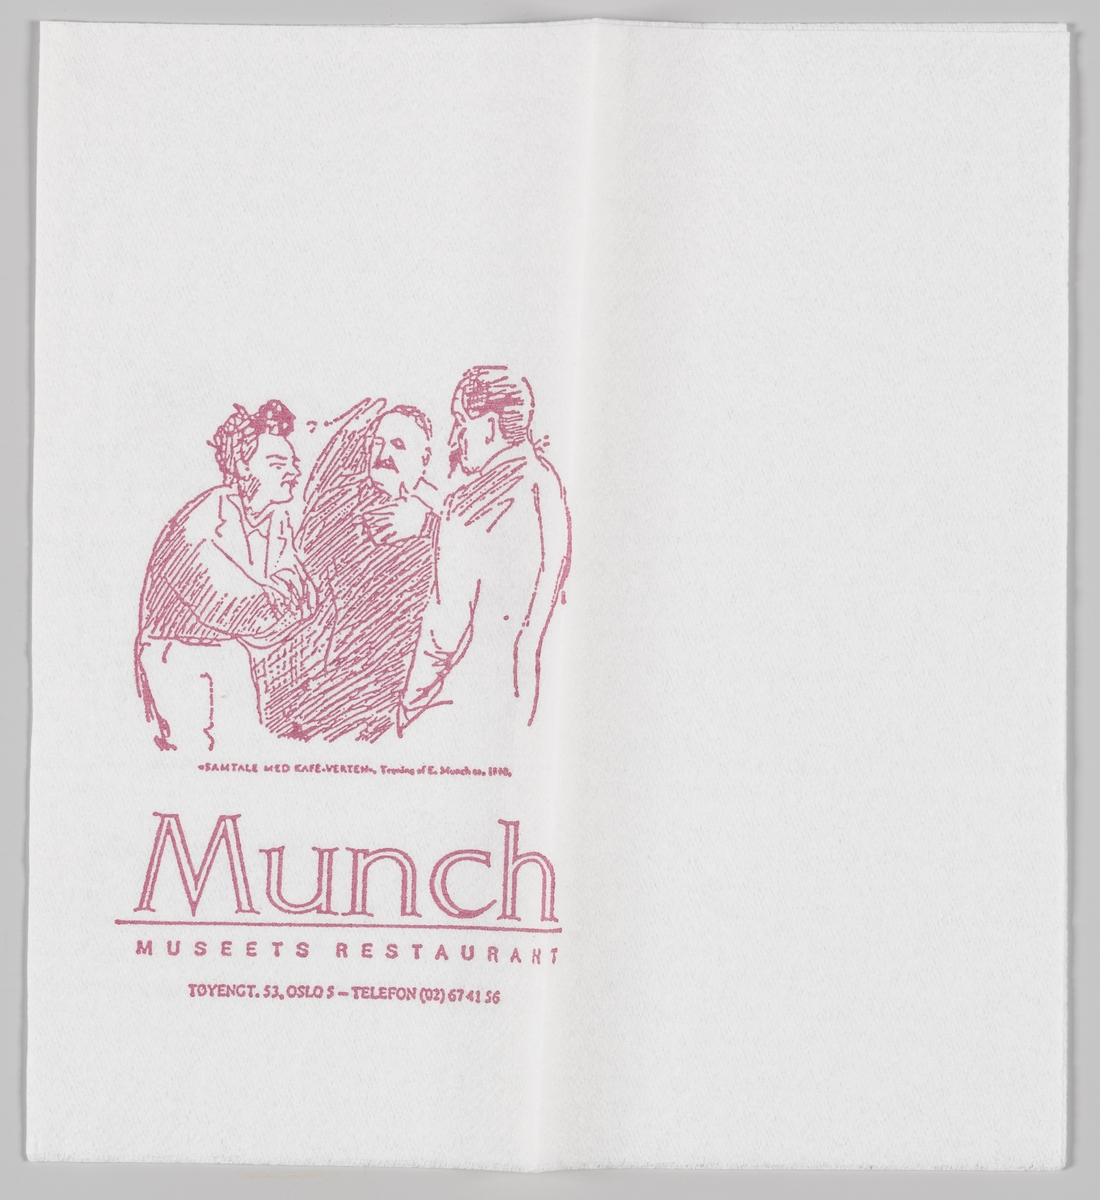 Samtale med Kafe-Verten, tegning av E. Munch og reklame for Munch museets restaurant.

Samme motiv på MIA.00007-004-0068.